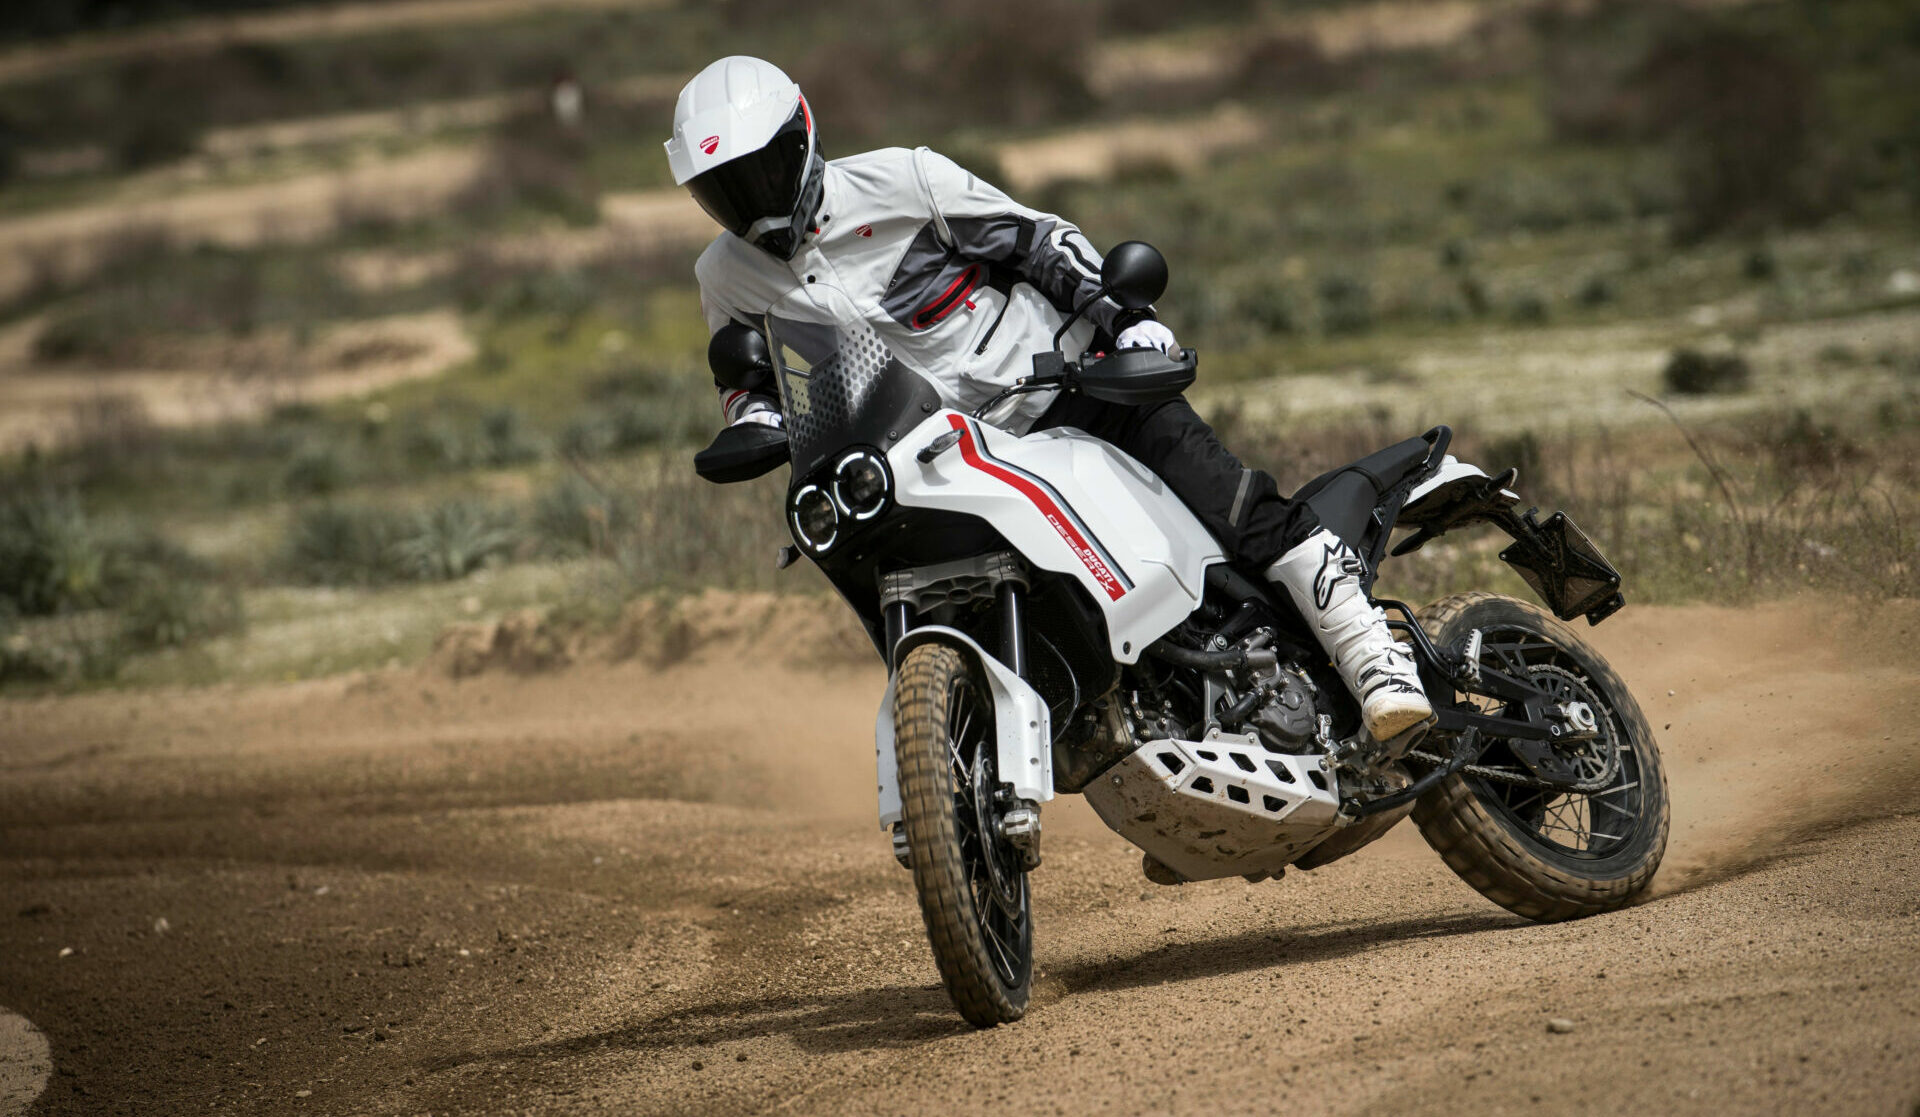 A Ducati DesertX in action. Photo courtesy Ducati.